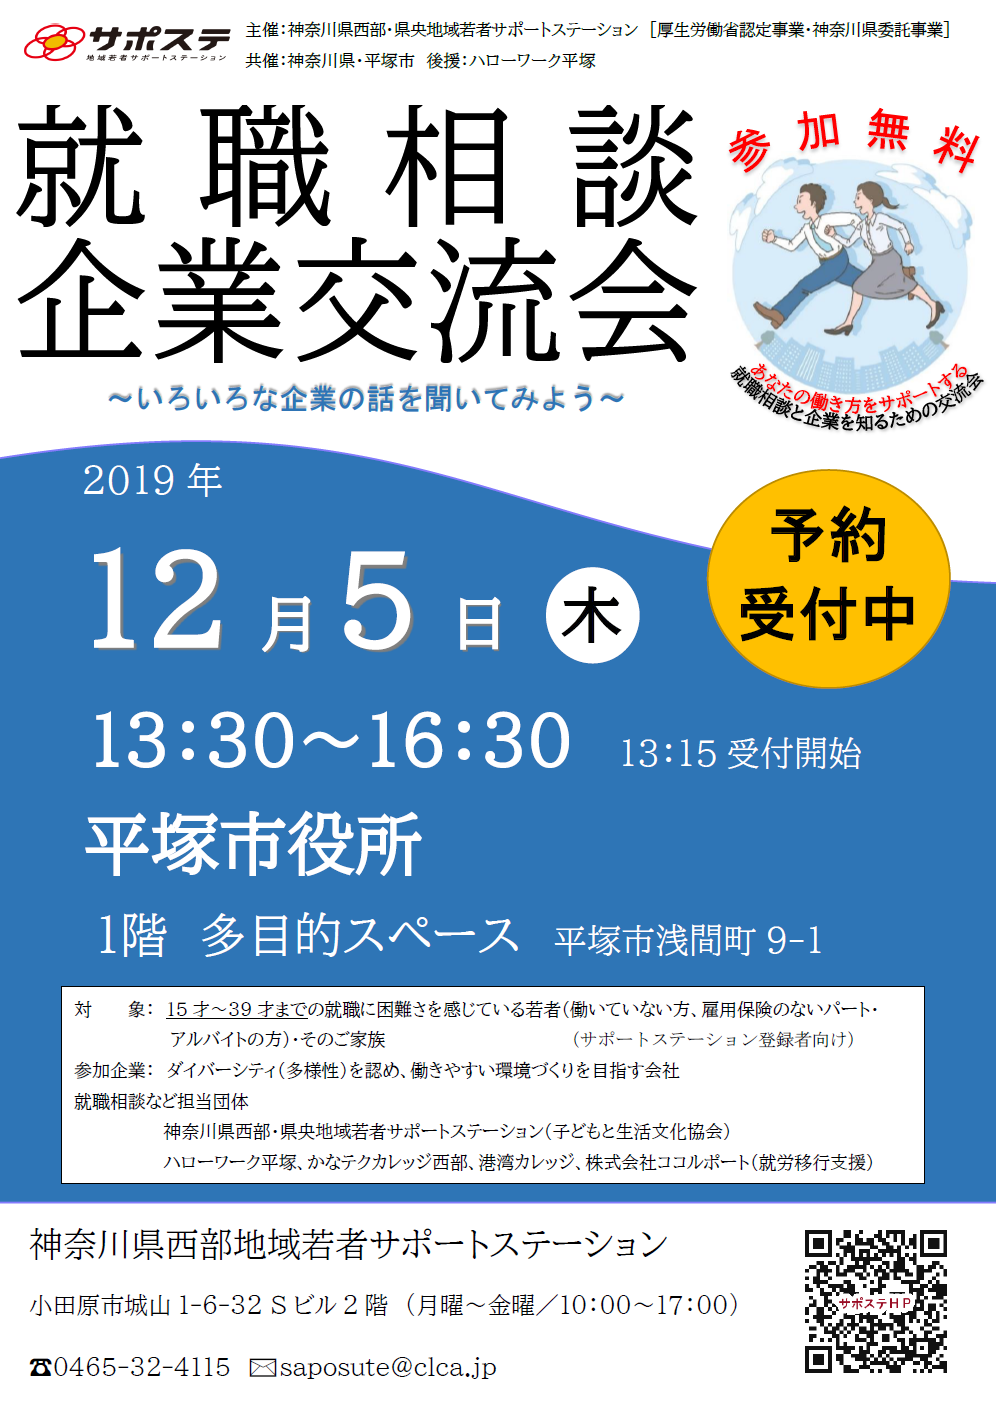 12 5 平塚 就職相談 企業交流会 開催します 神奈川県西部地域若者サポートステーション 県西サポステ